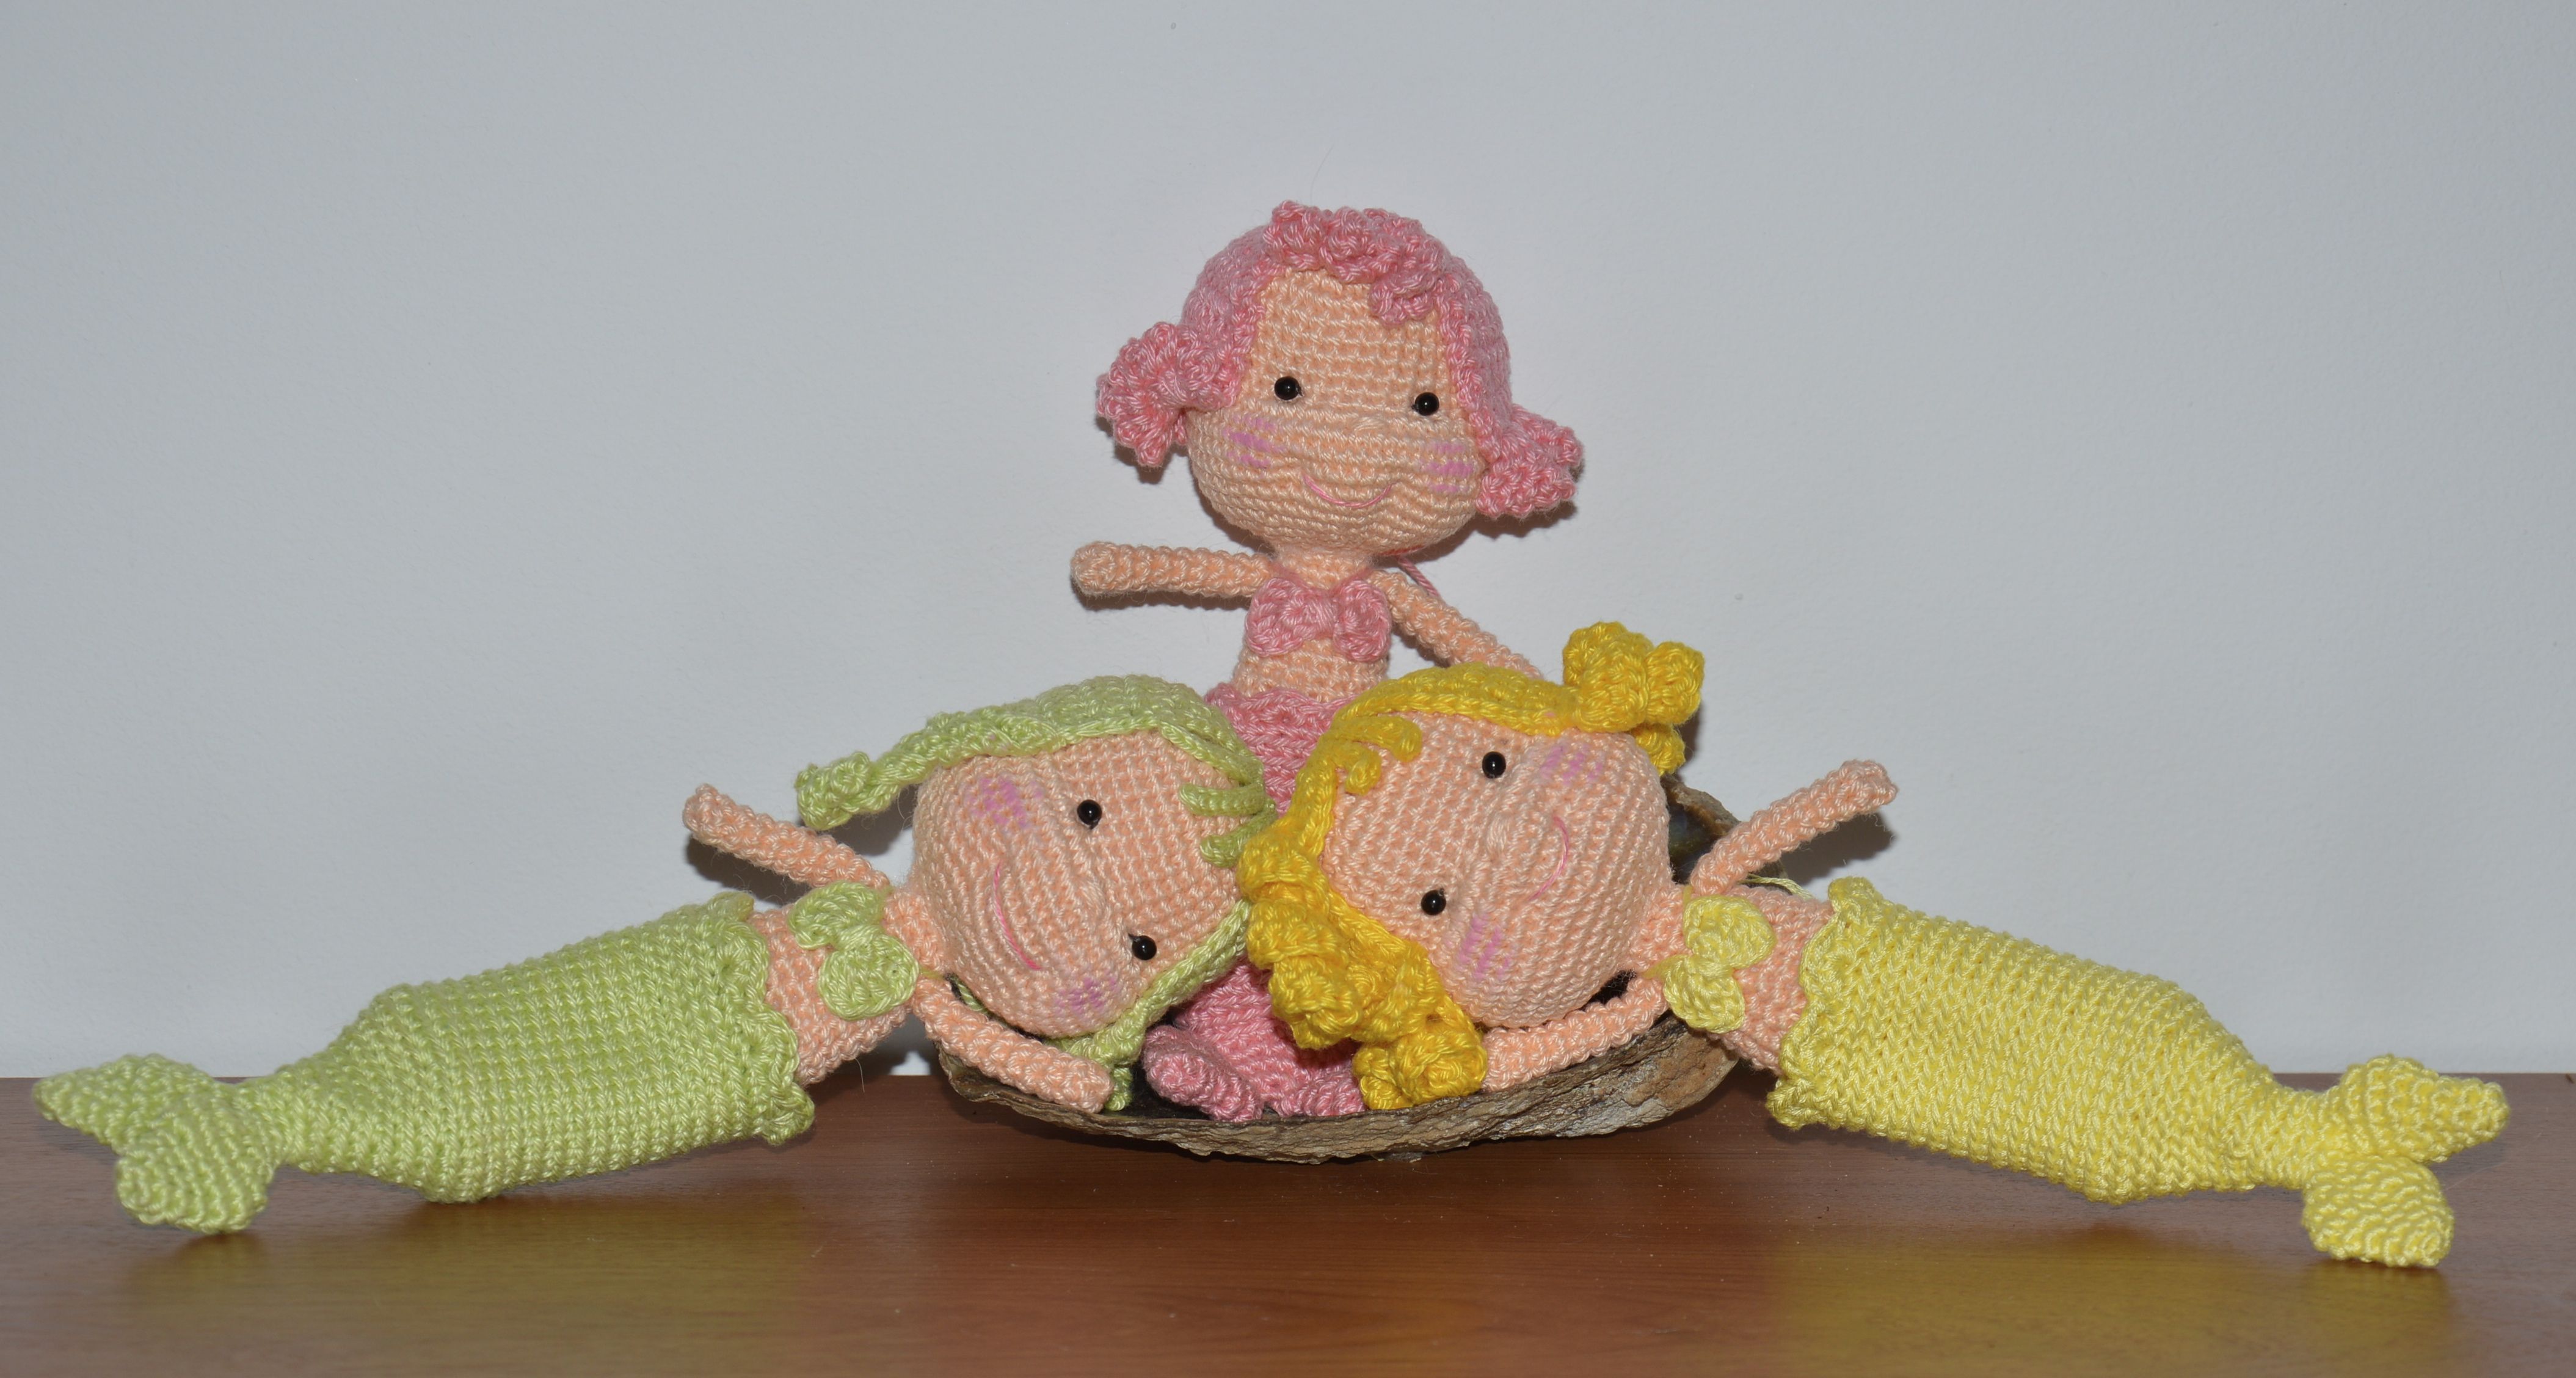 Cute Teddy Bear – FREE Crochet Pattern / Tutorial